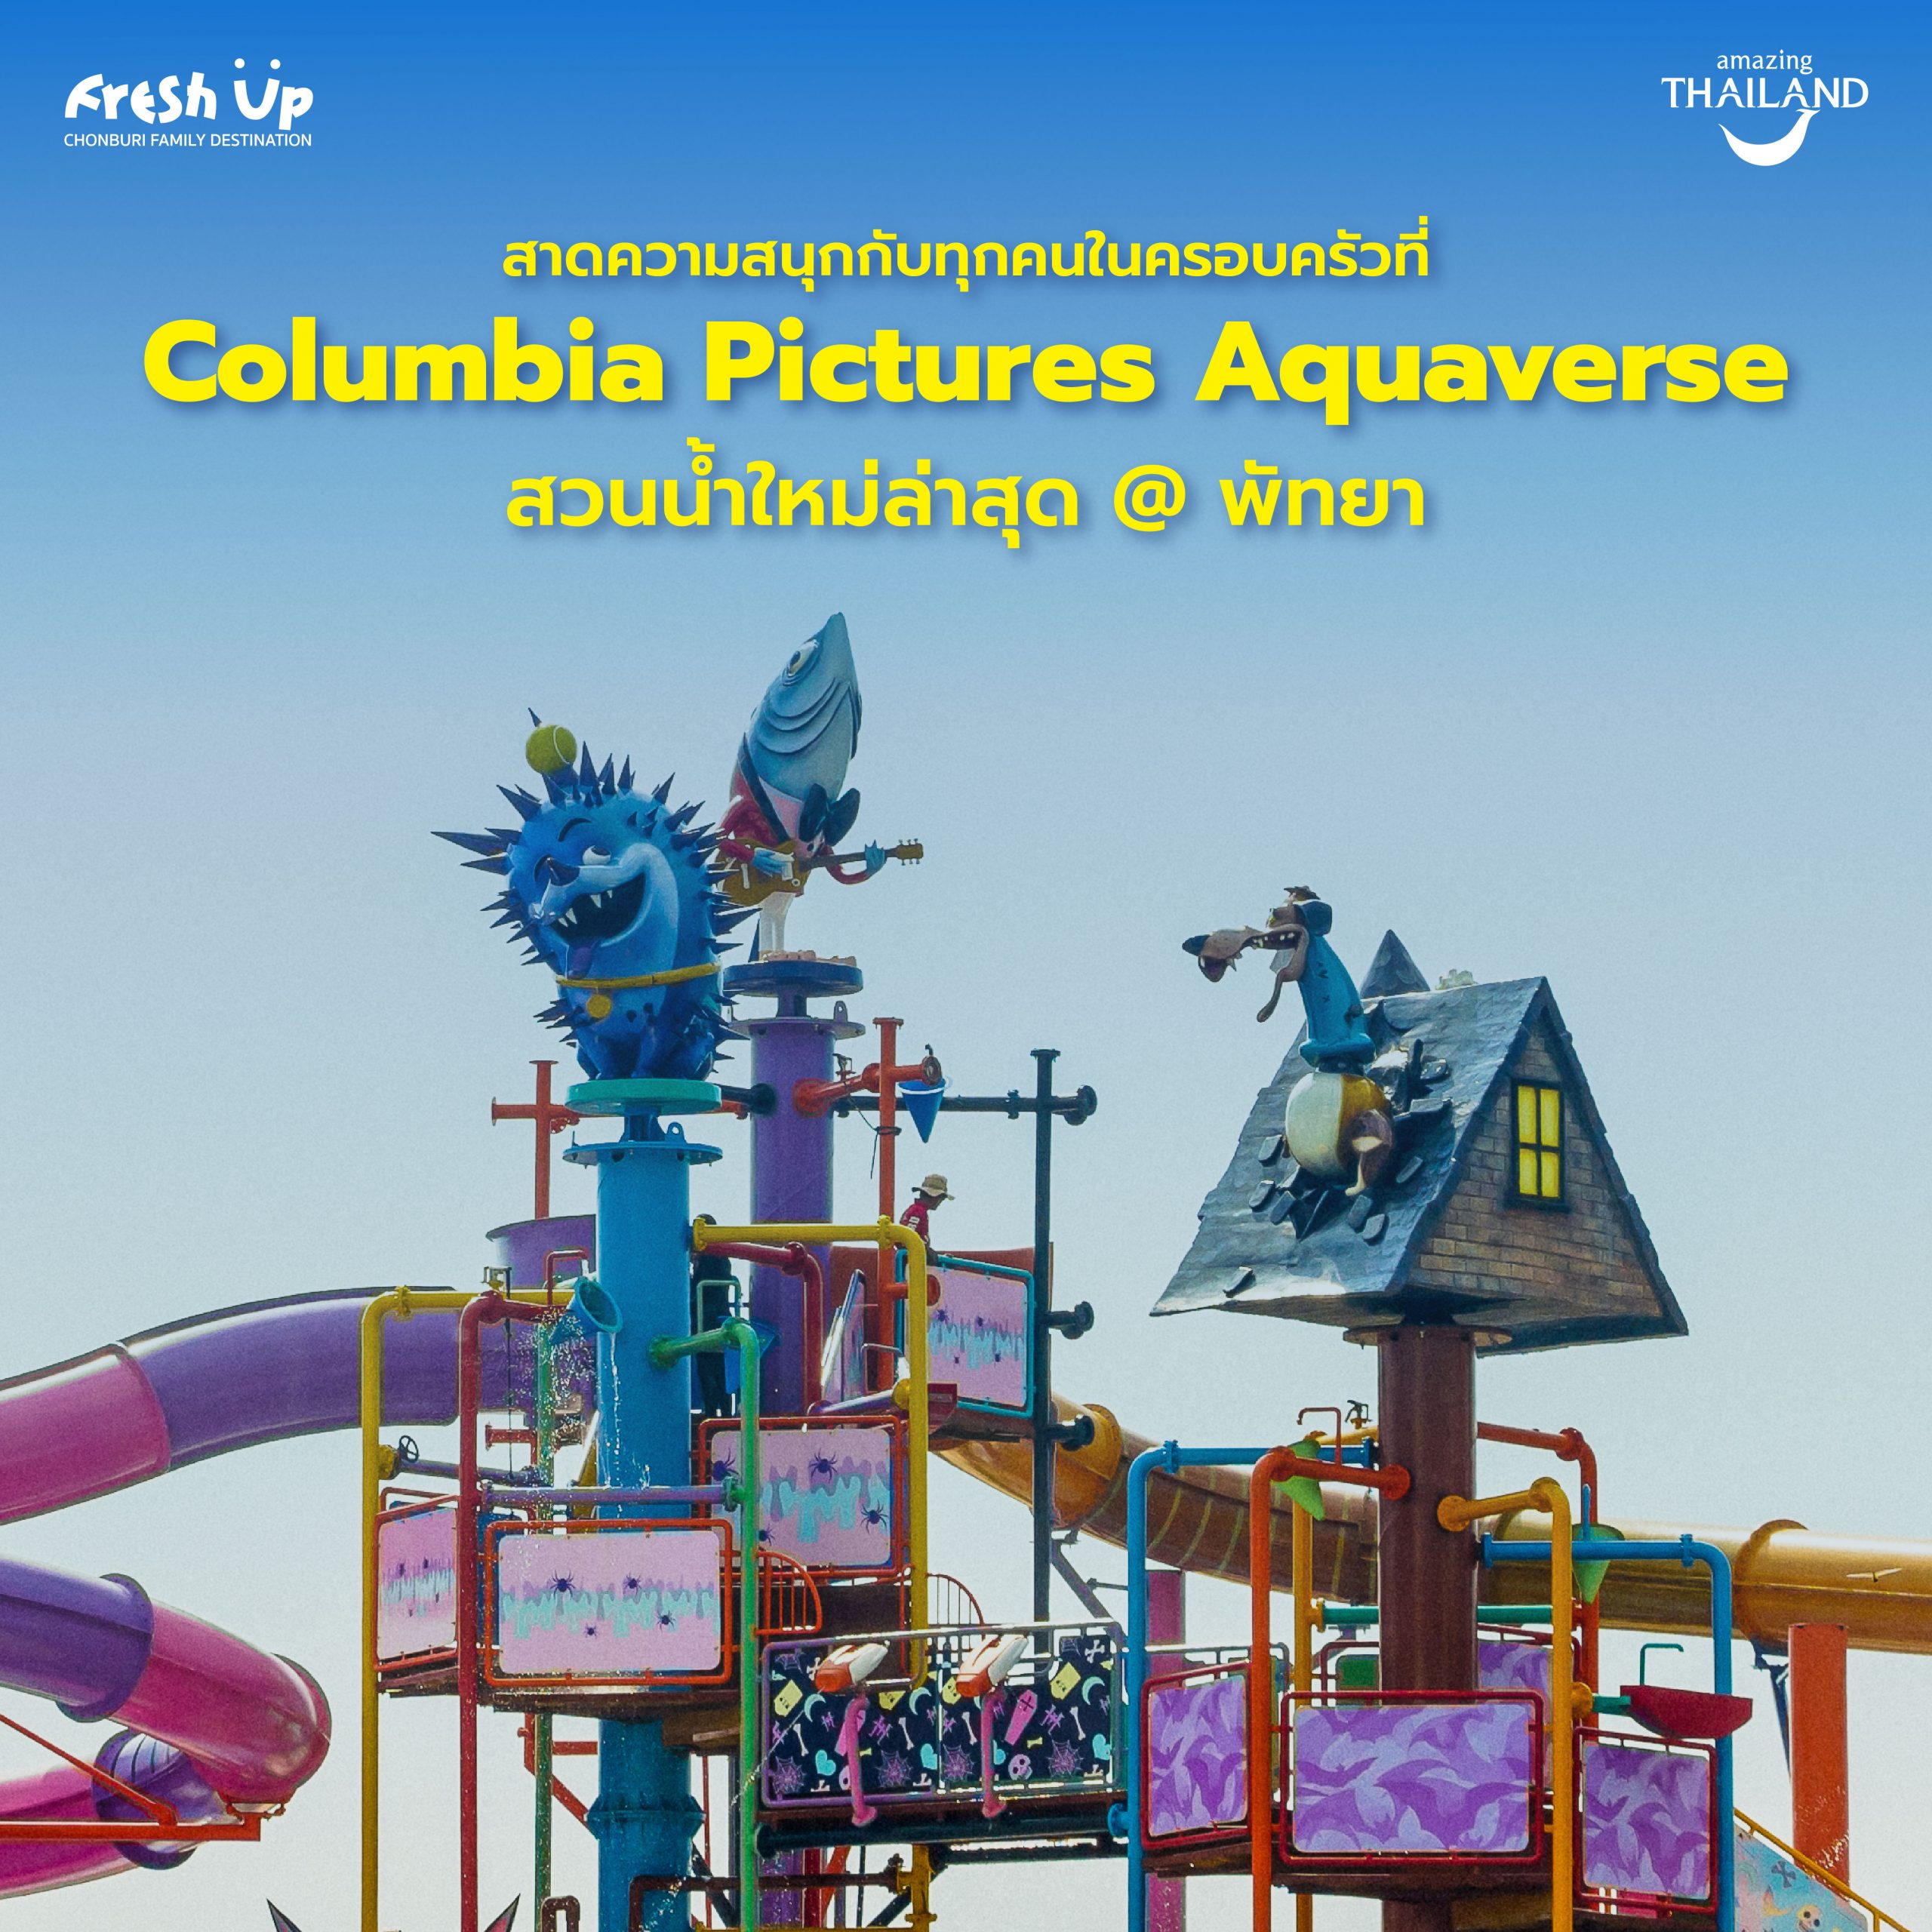 ตะลุยสวนน้ำใหม่ล่าสุดแห่งเมืองพัทยา ‘Columbia Pictures Aquaverse’